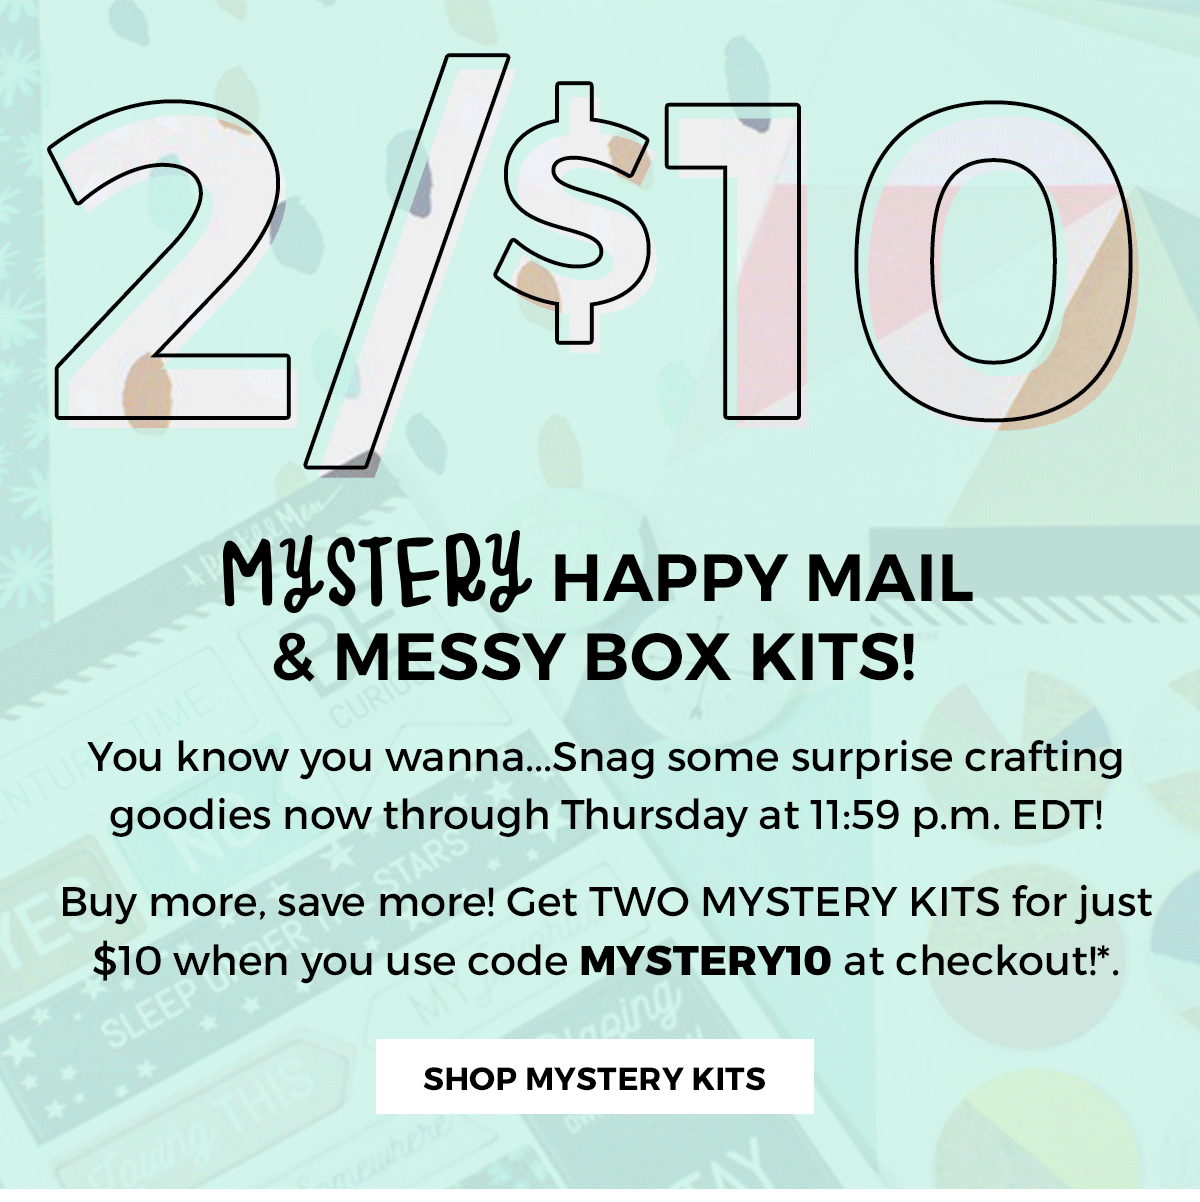 Happy Mail / Messy Box Mystery Kits!